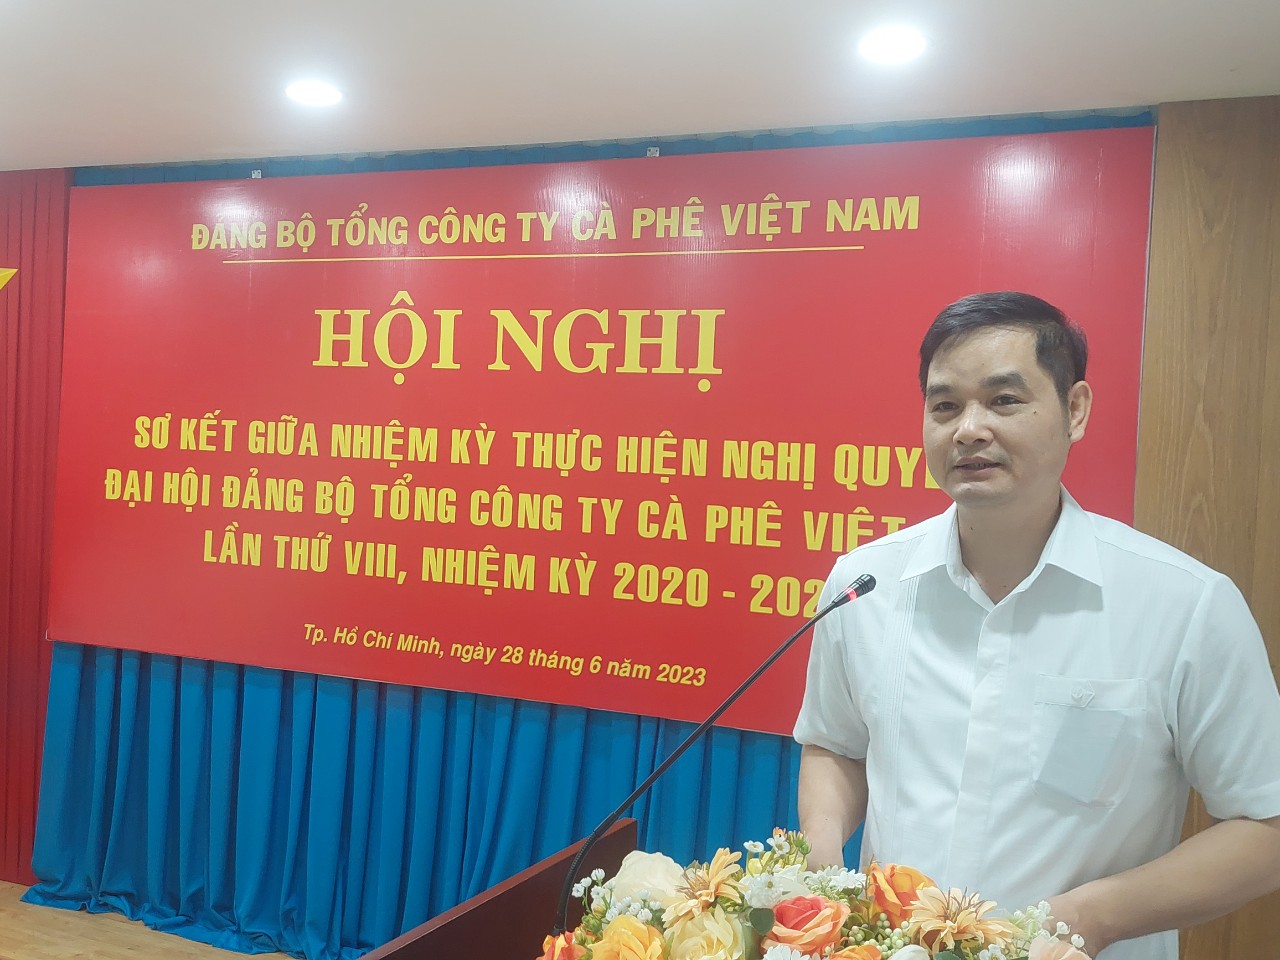 Đồng chí Phan Công Nam - Ủy viên Ban Thường vụ, Chủ nhiệm Ủy ban Kiểm tra Đảng ủy Khối Doanh nghiệp Trung ương phát biểu chỉ đạo Hội nghị.